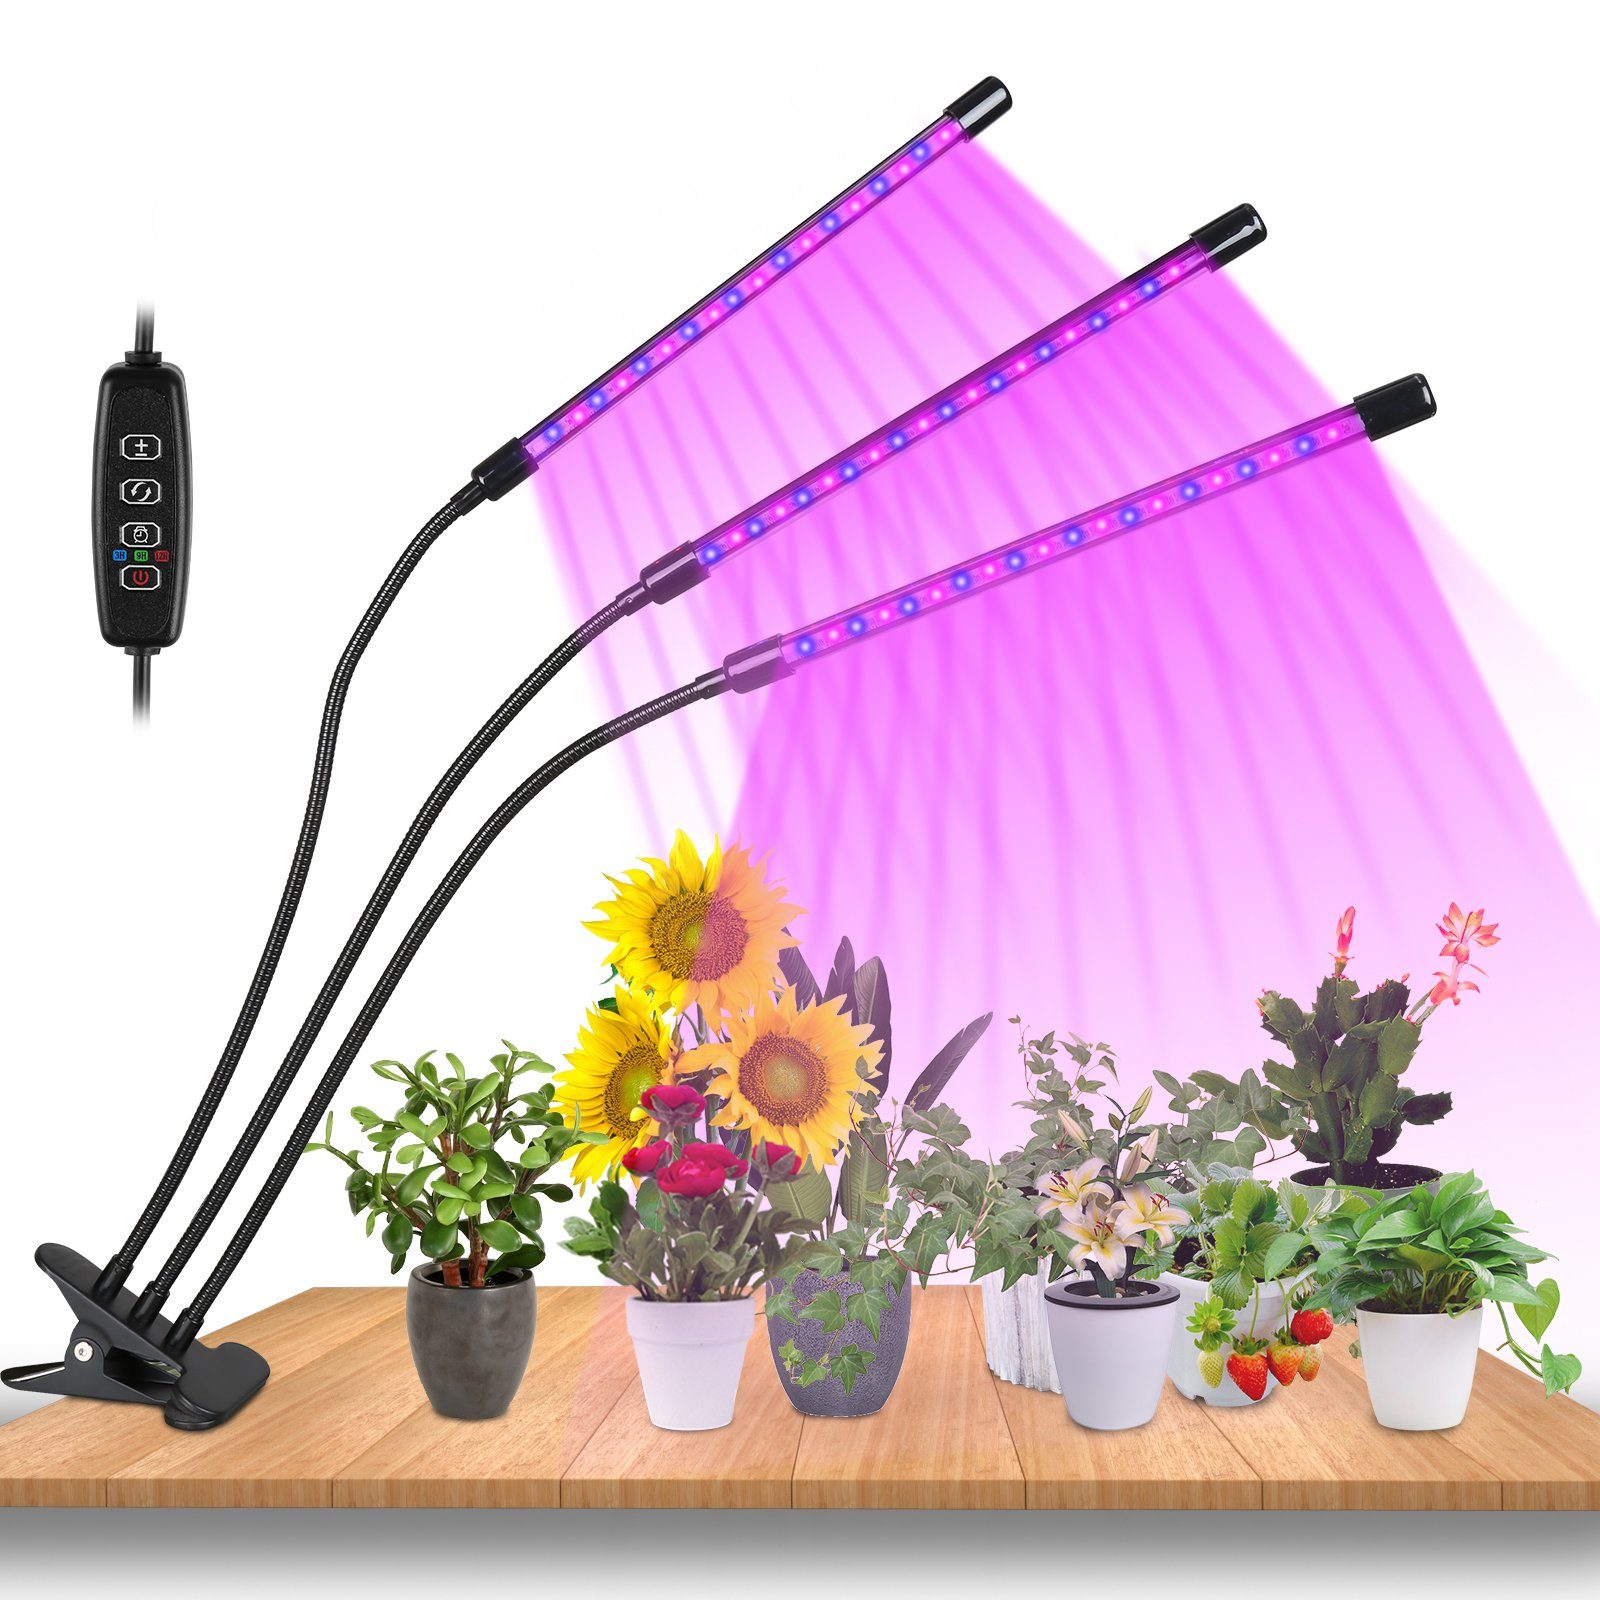 Gimisgu Pflanzenlampe 3 Köpfe LED Pflanzenlicht 30W Dimmbar Vollspektrum Wachstumslampe, Grow Light mit 3 Licht Modus, 10 Helligkeitsstufen